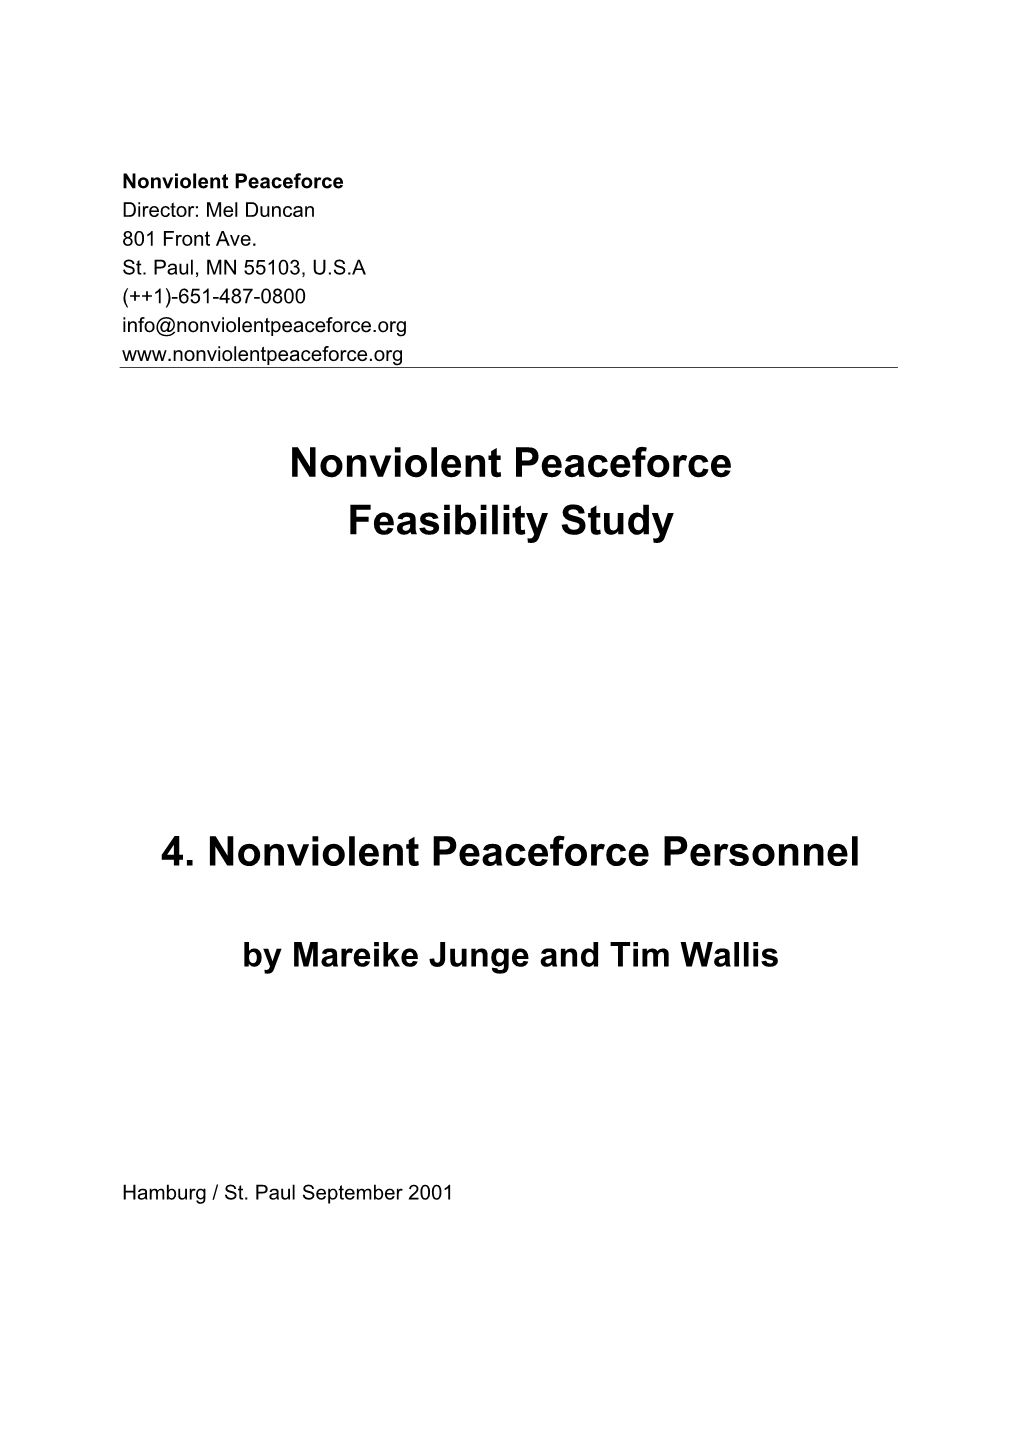 Nonviolent Peaceforce Feasibility Study 4. Nonviolent Peaceforce